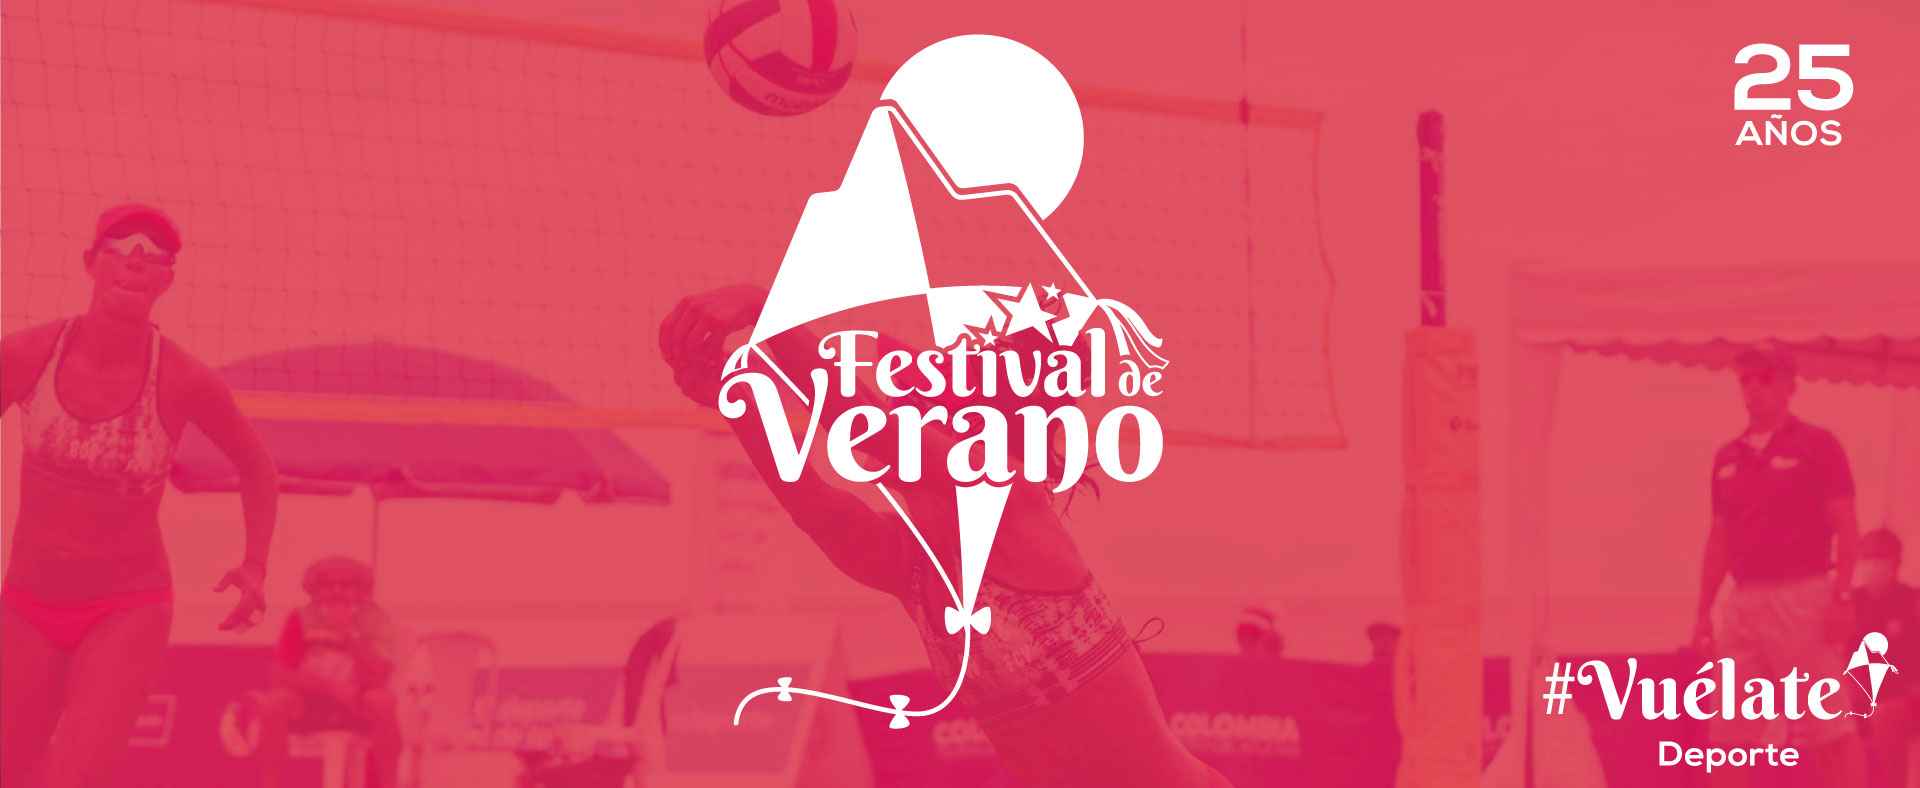 Festival de Verano deporte